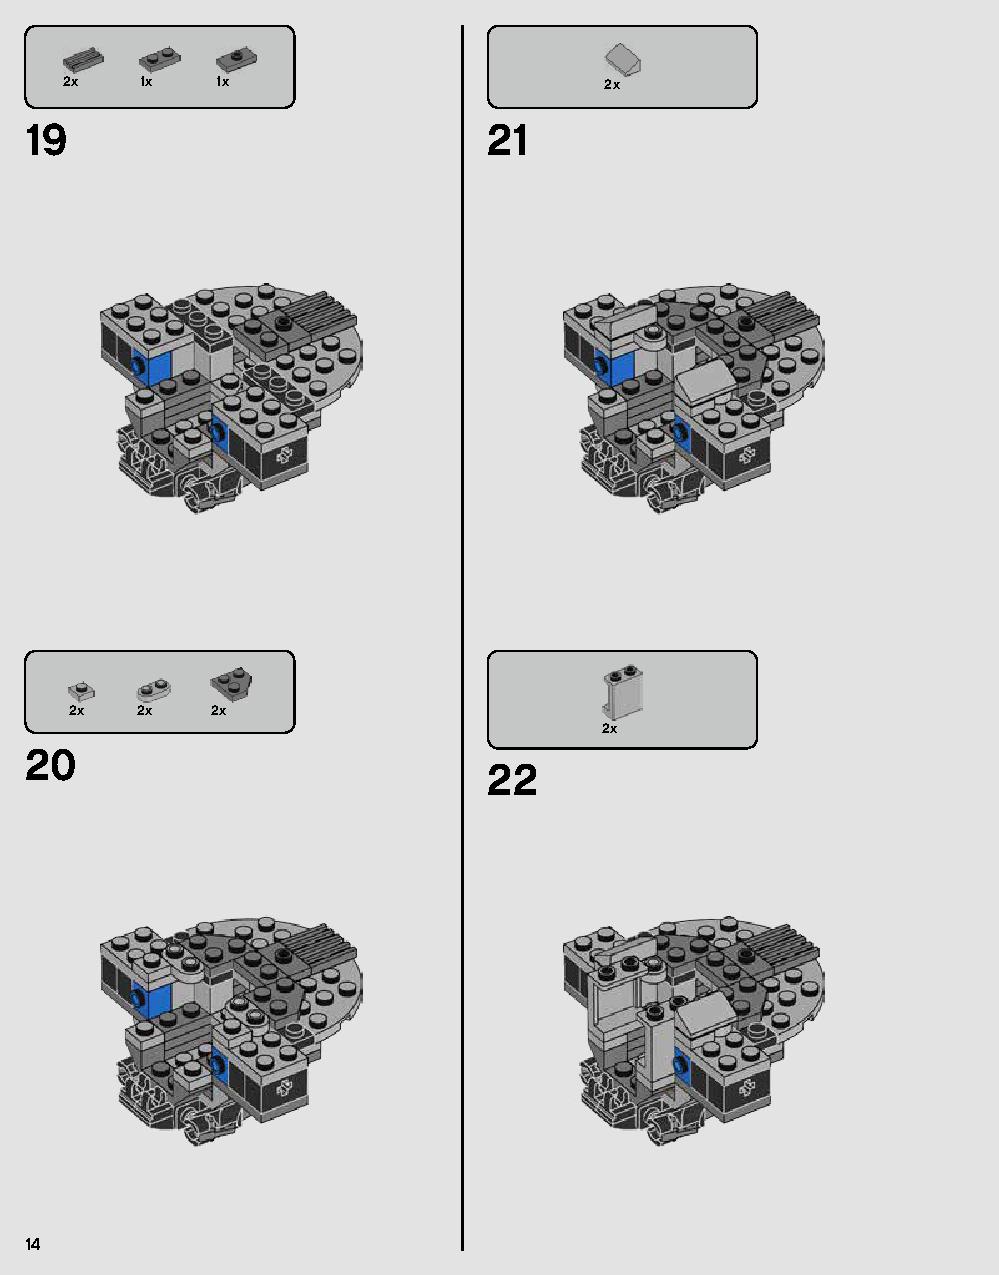 ダース・ベイダーの城 75251 レゴの商品情報 レゴの説明書・組立方法 14 page